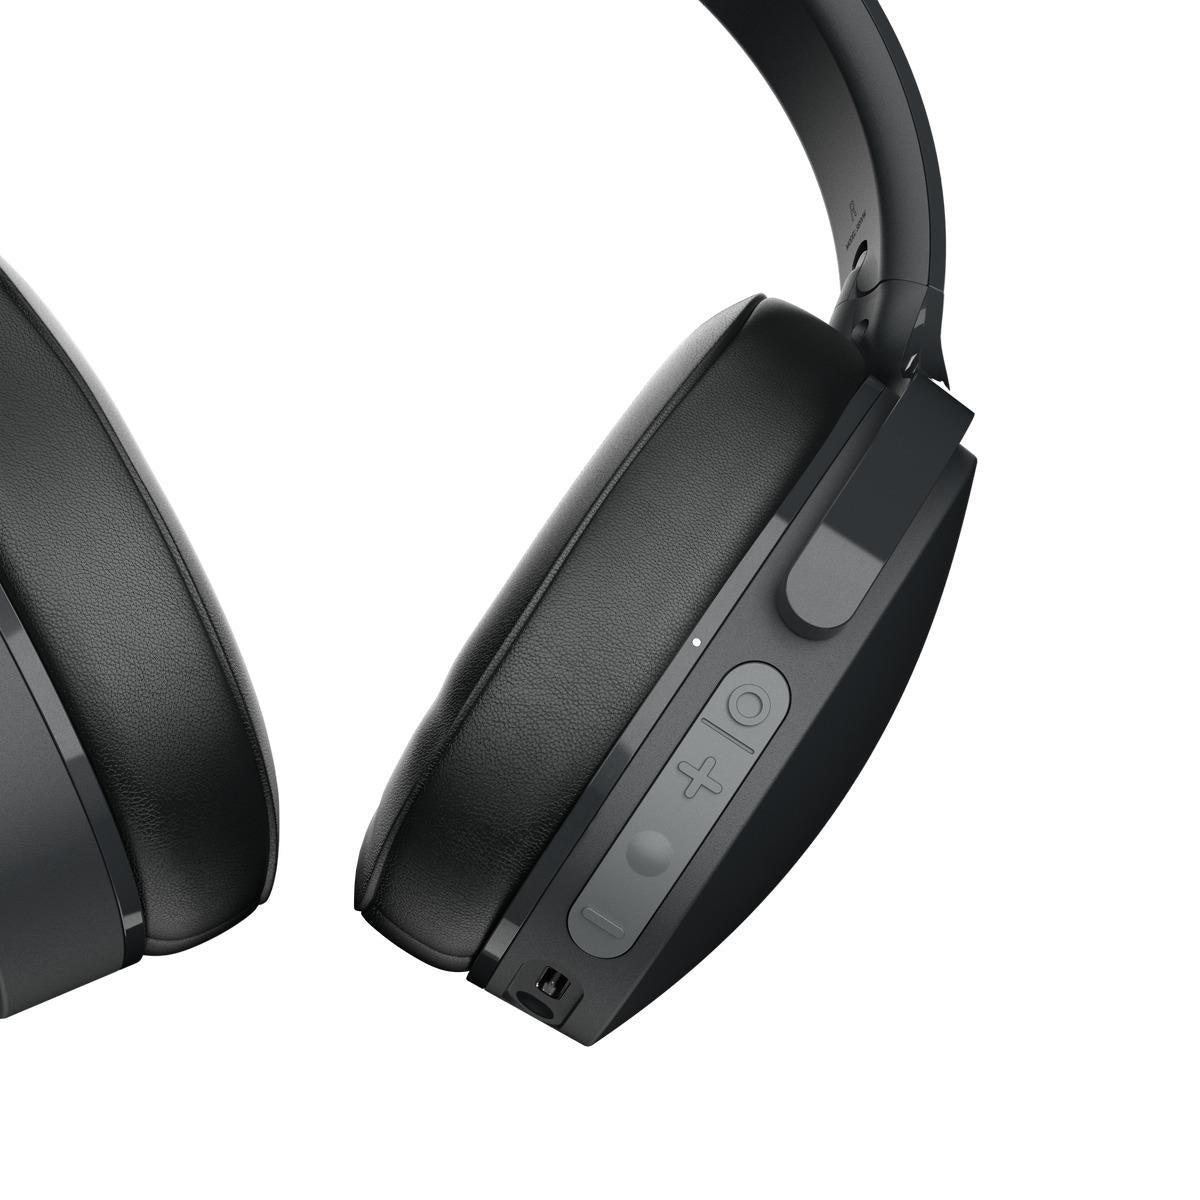 Skullcandy Hesh Evo Wireless Over-Ear Headphones - Black